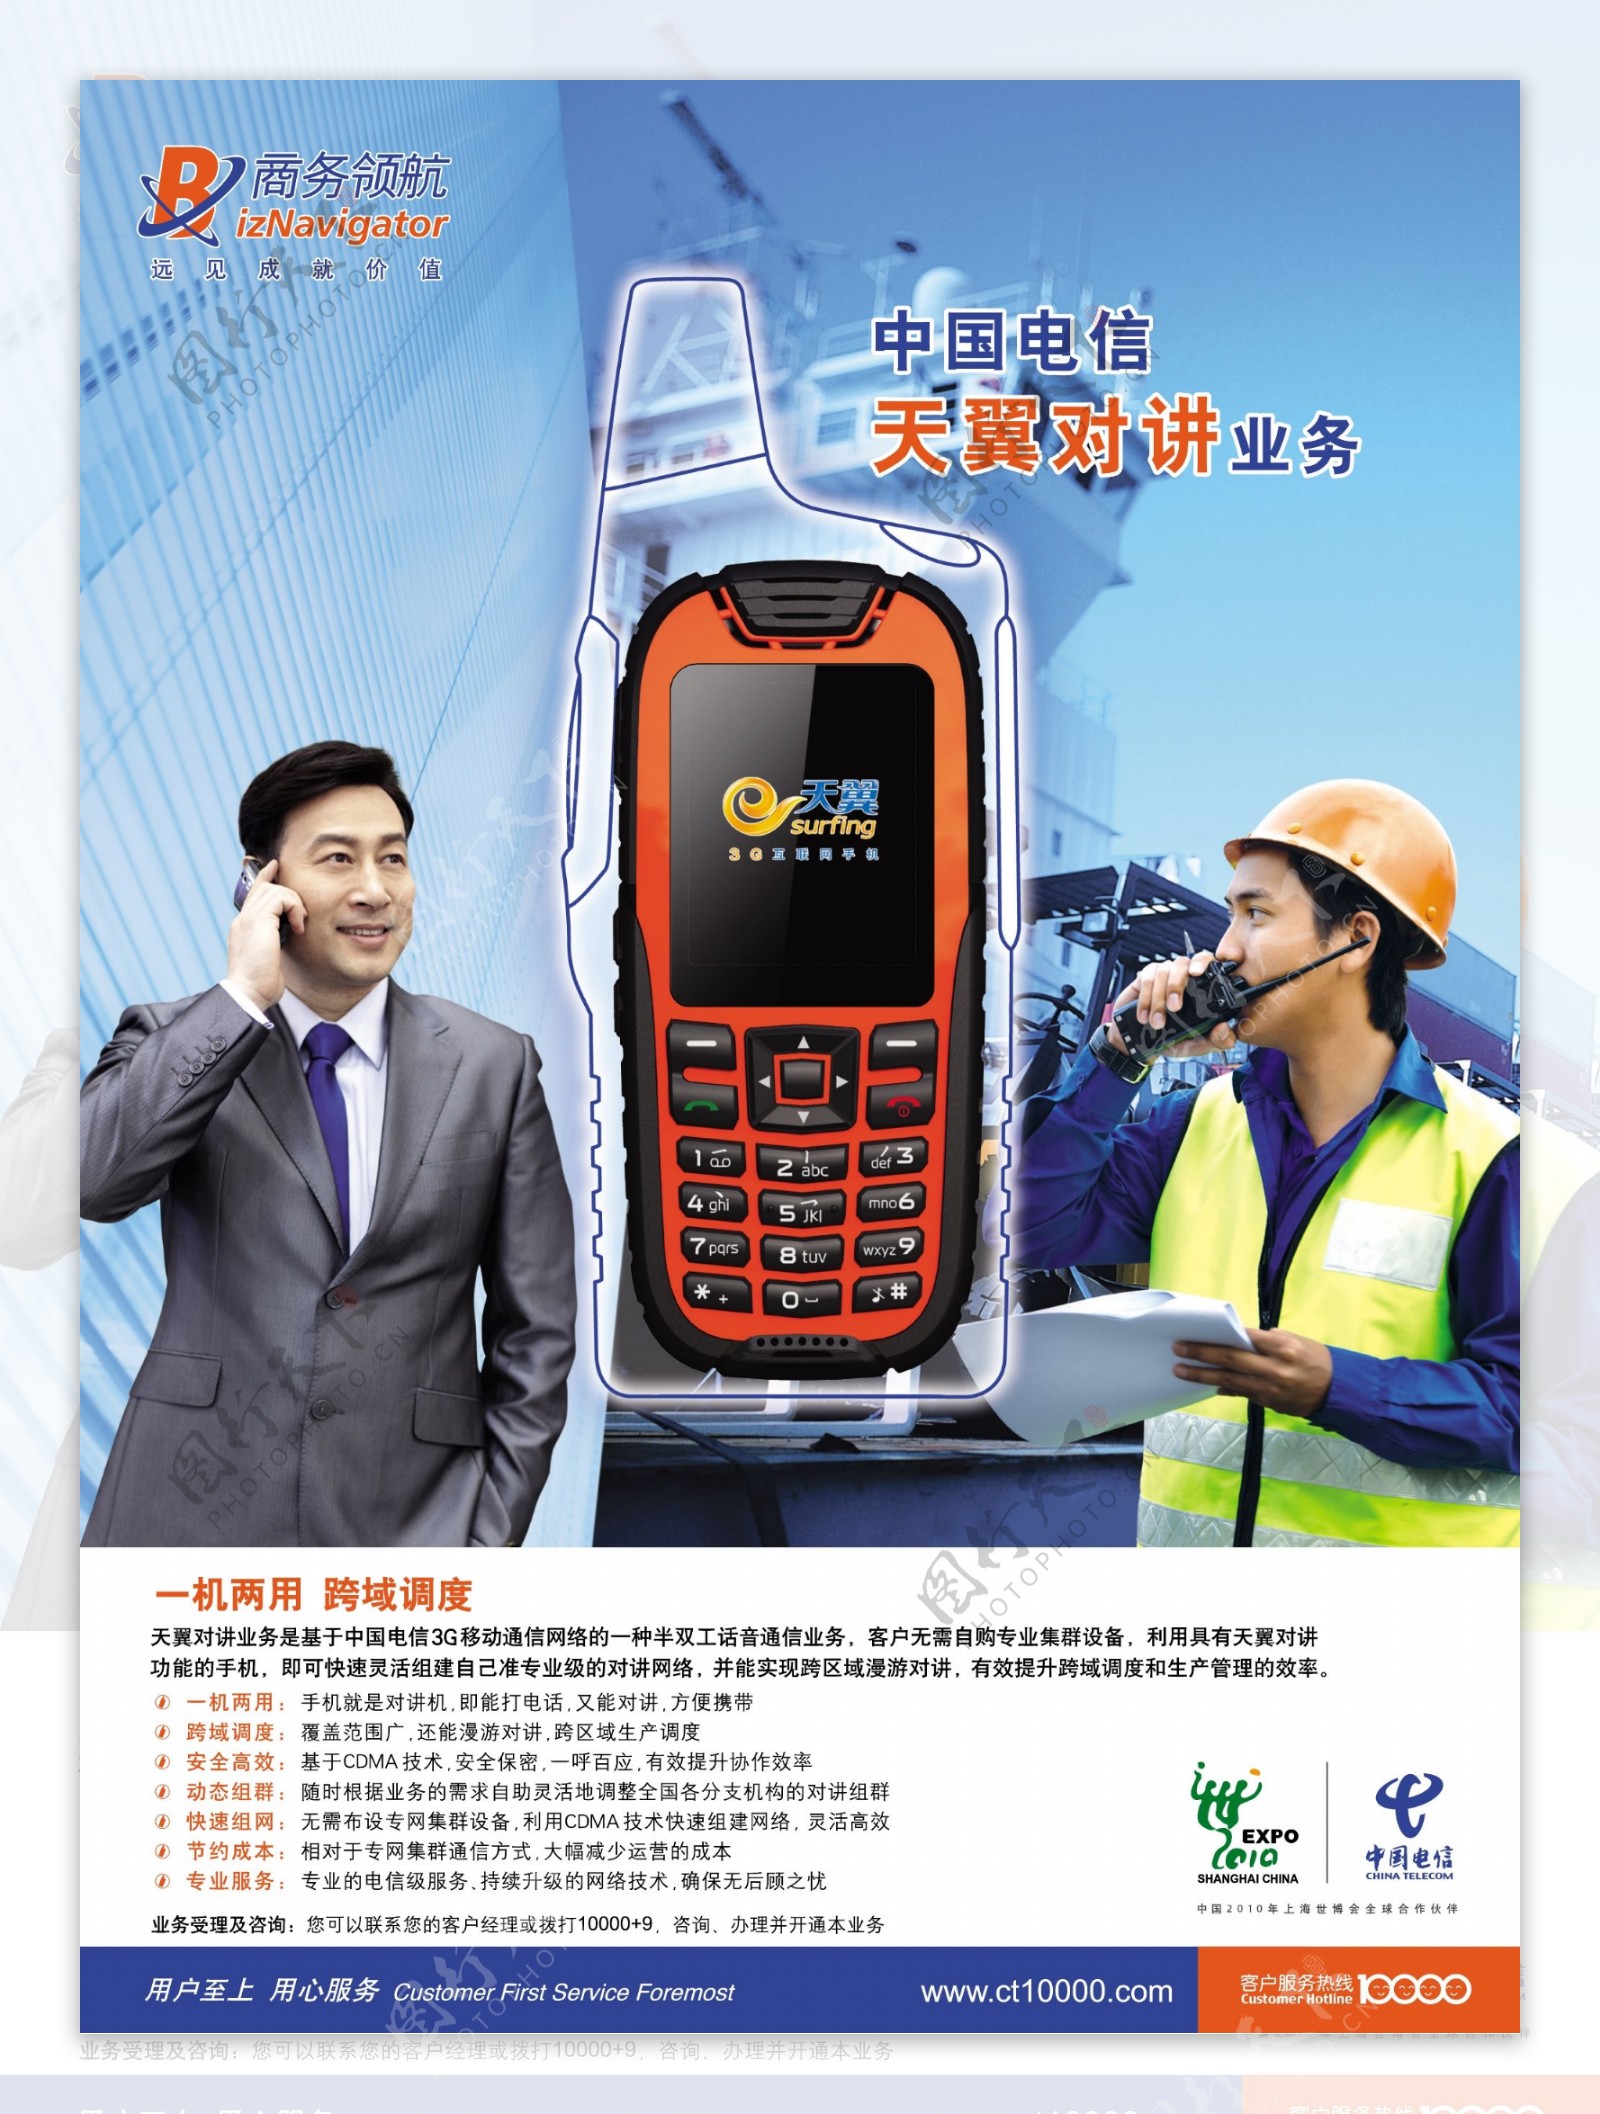 中国电信天翼对讲业务图片